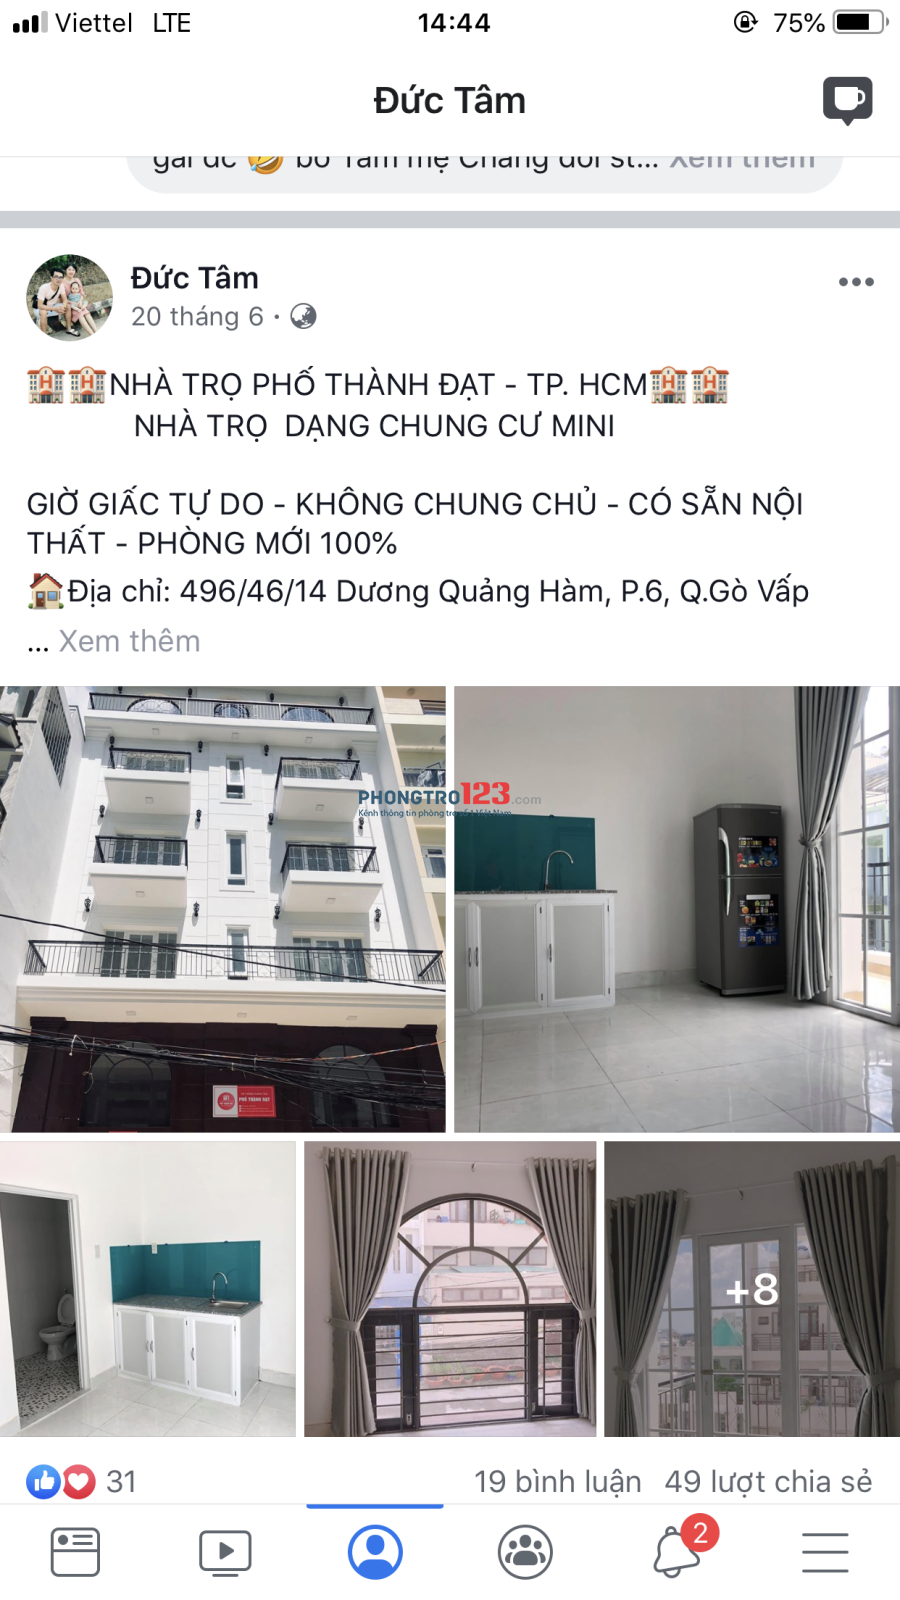 Phòng mặt tiền 50m2, có máy lạnh, tiện kinh doanh nhỏ. 496/46/14 Dương Quảng Hàm